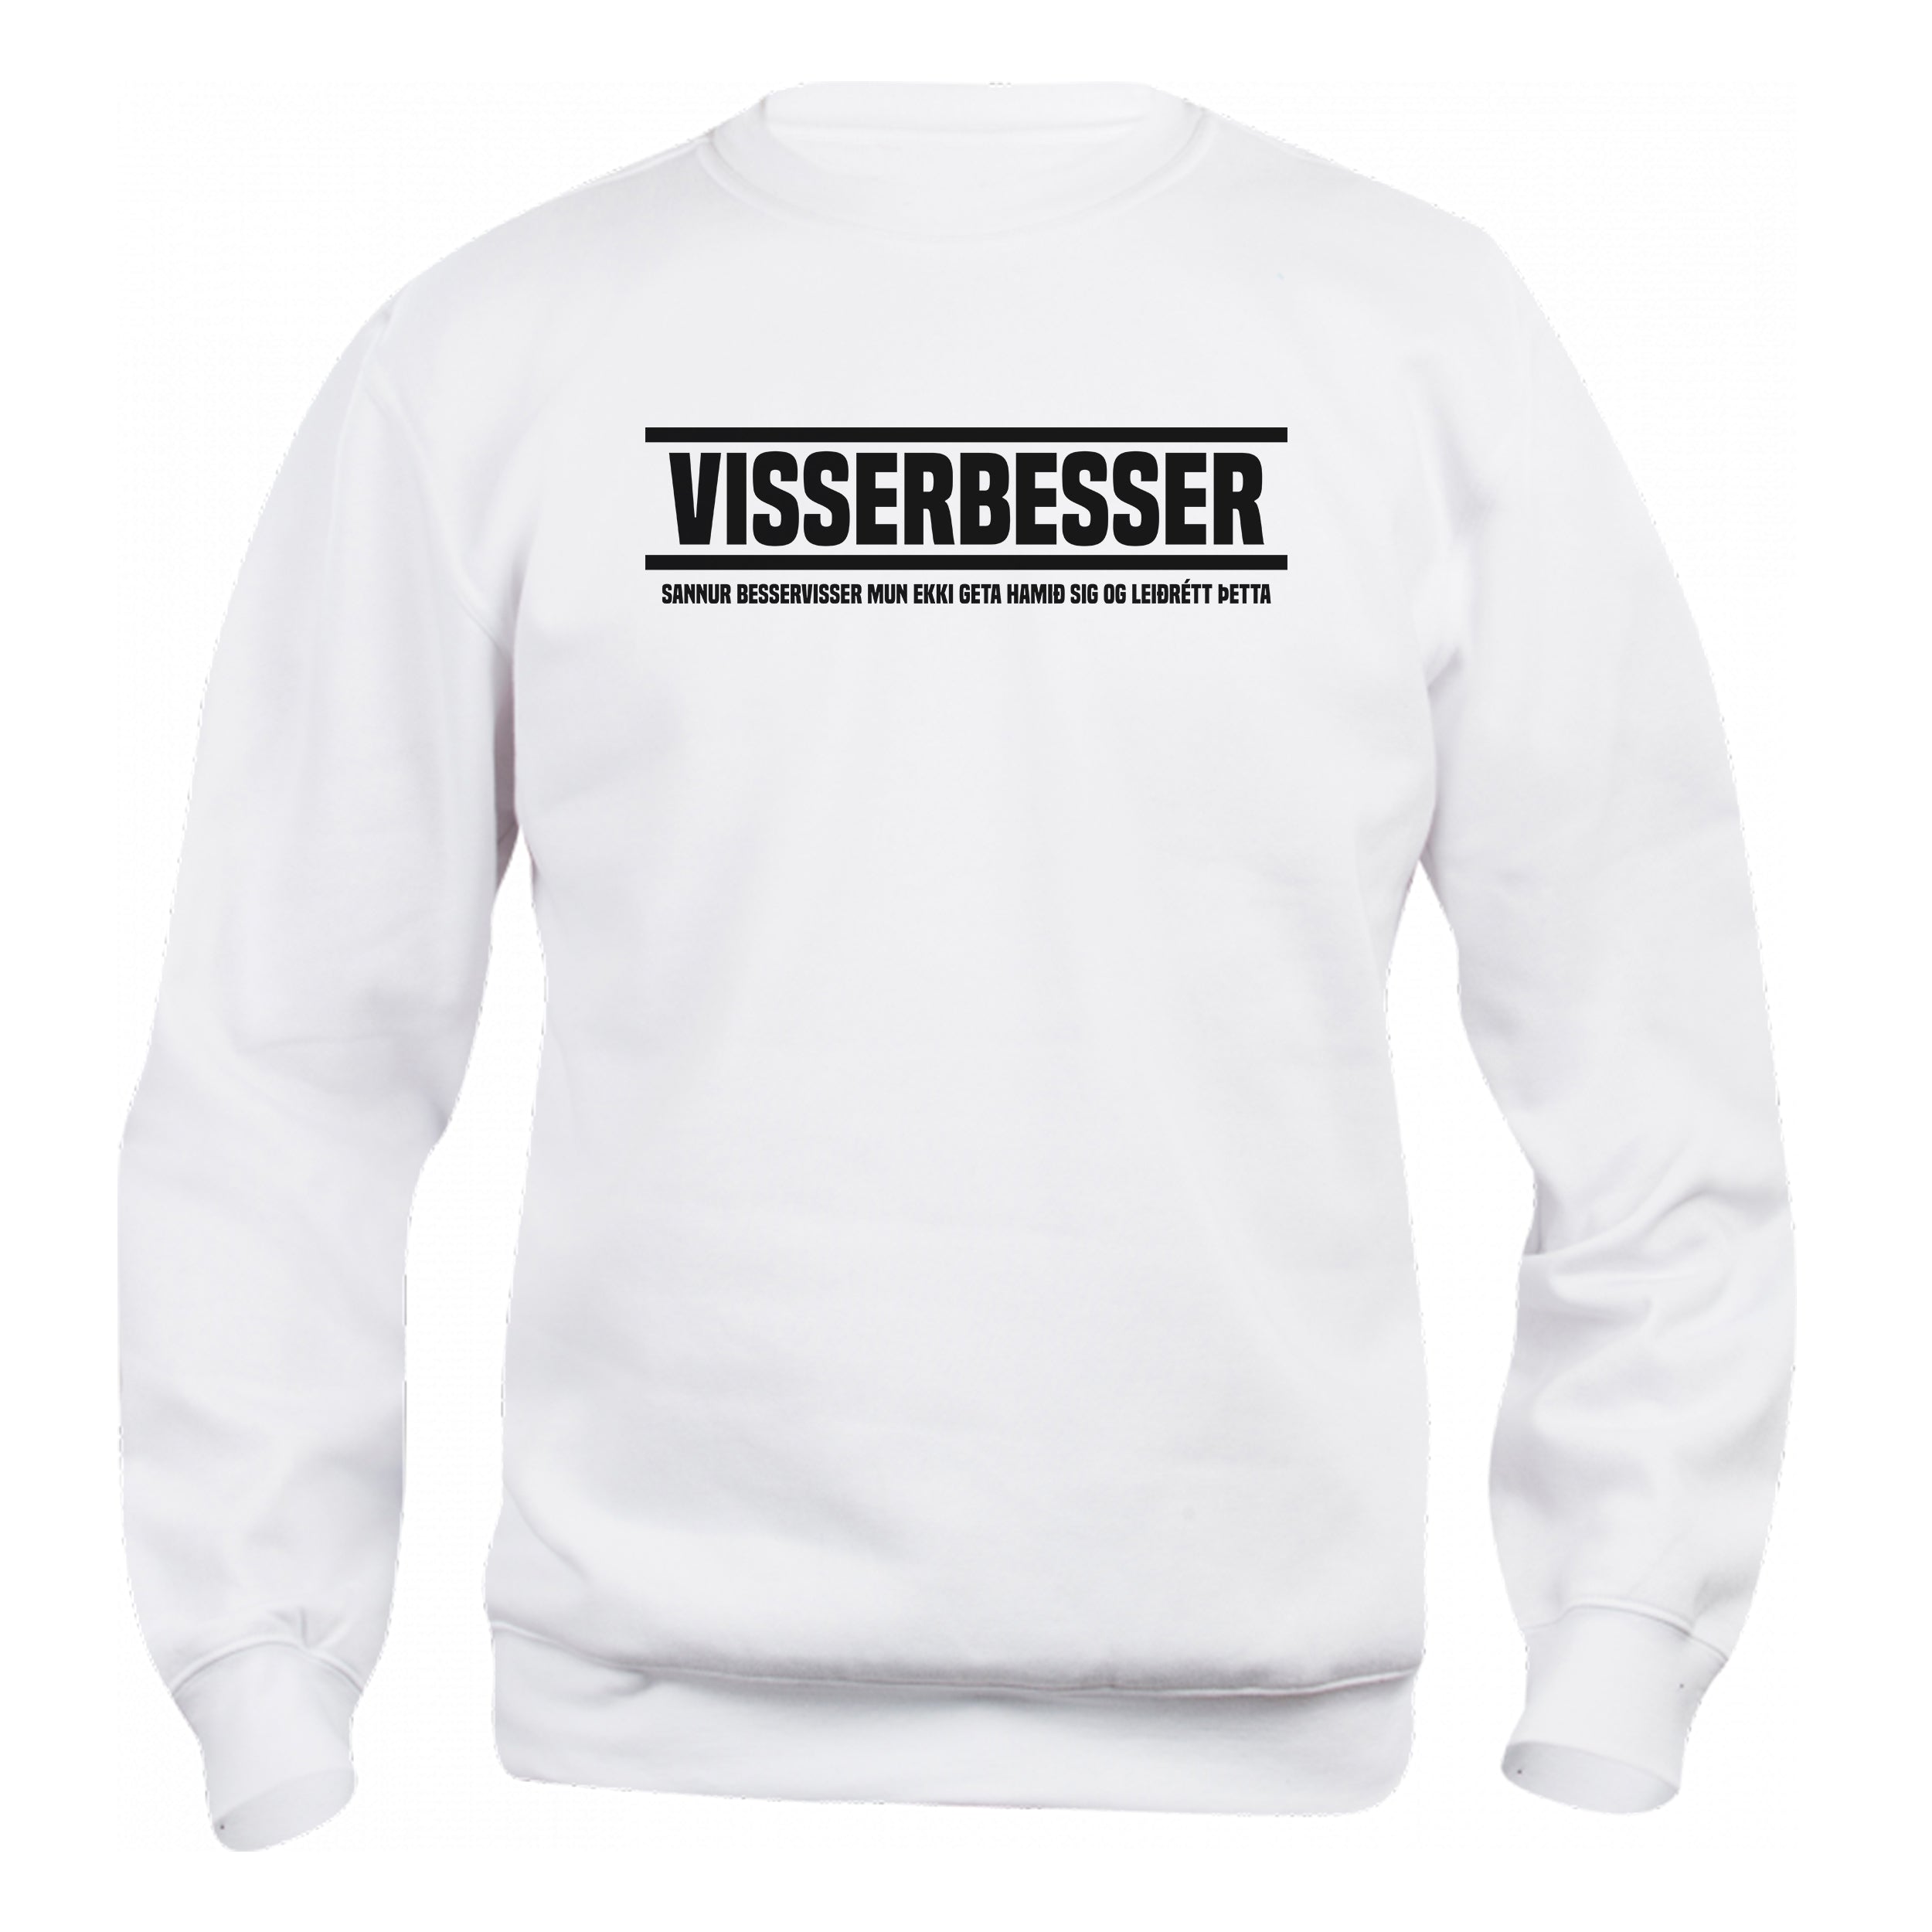 VISSERBESSER - Peysa - Hvít